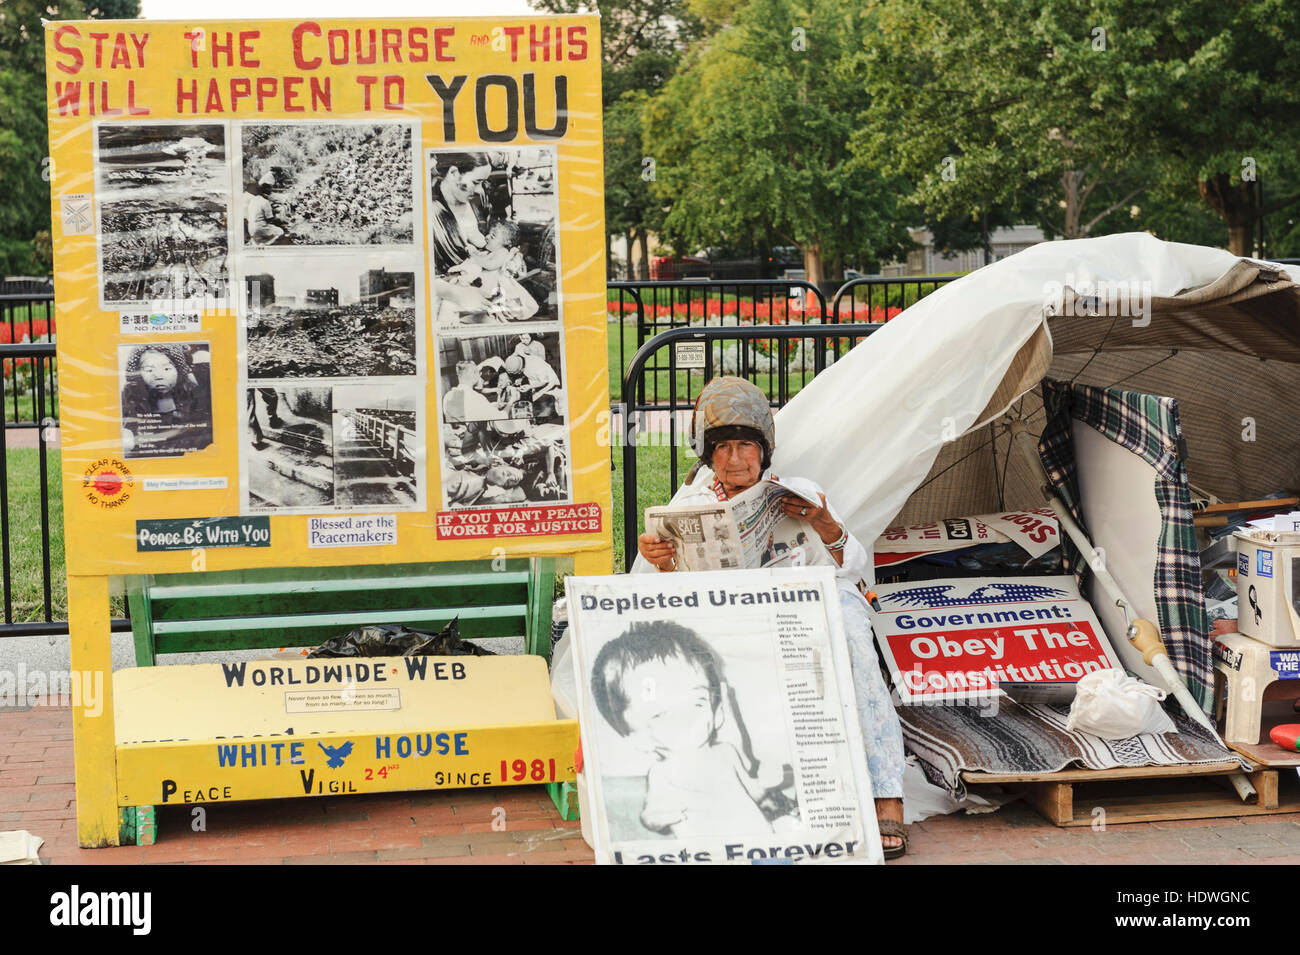 White House Peace Vigil, Concepcion Picciotto, eine in Spanien geborene Friedensaktivistin, die in ihrem Lager auf der Pennsylvania Ave., Washington, D.C. eine Zeitung liest Stockfoto